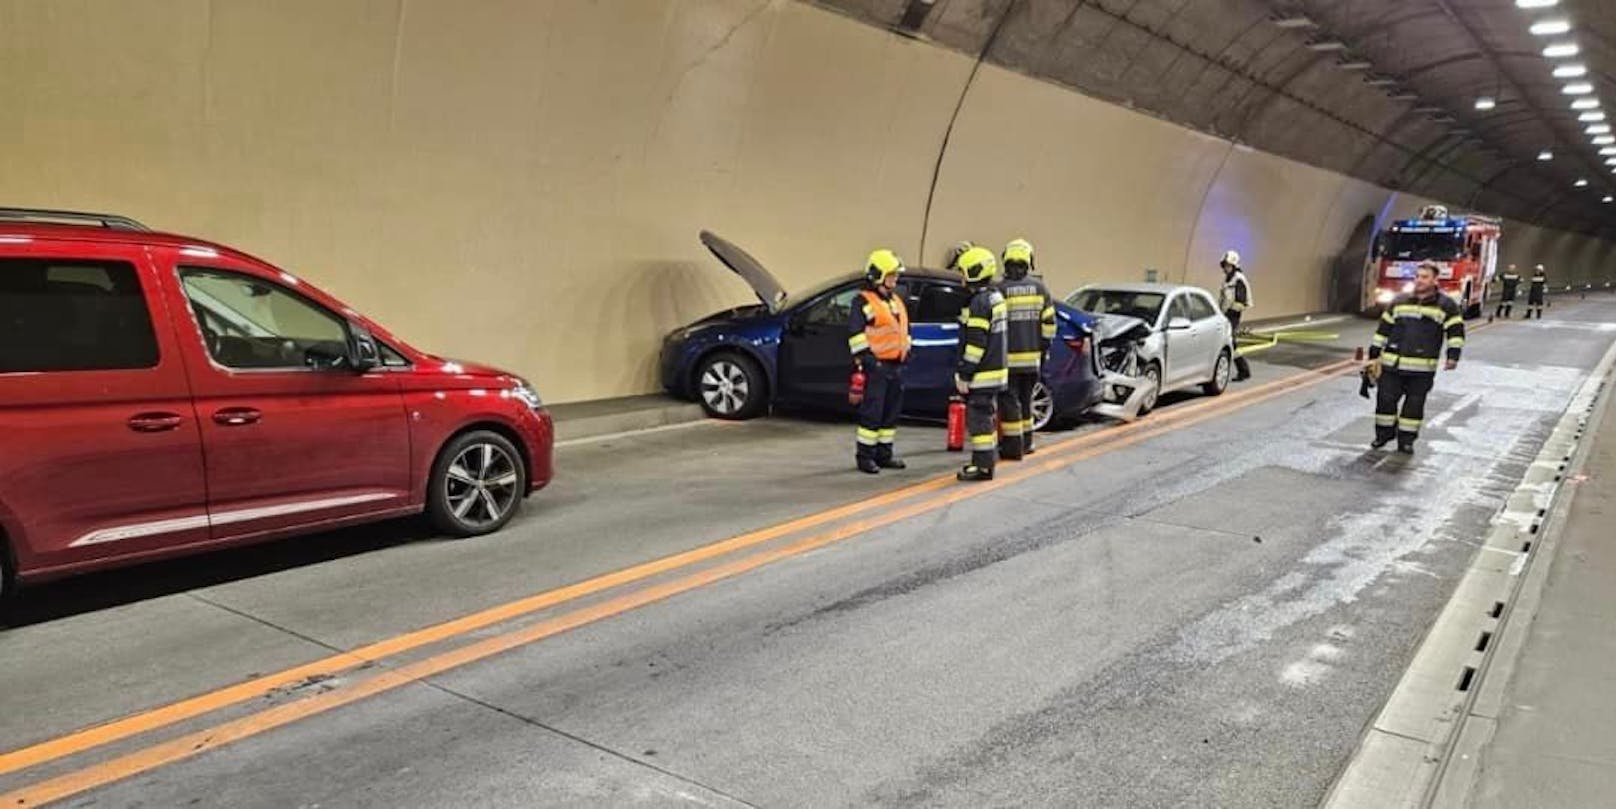 Lenkerin gerät im Tunnel in Gegenverkehr – 4 Verletzte